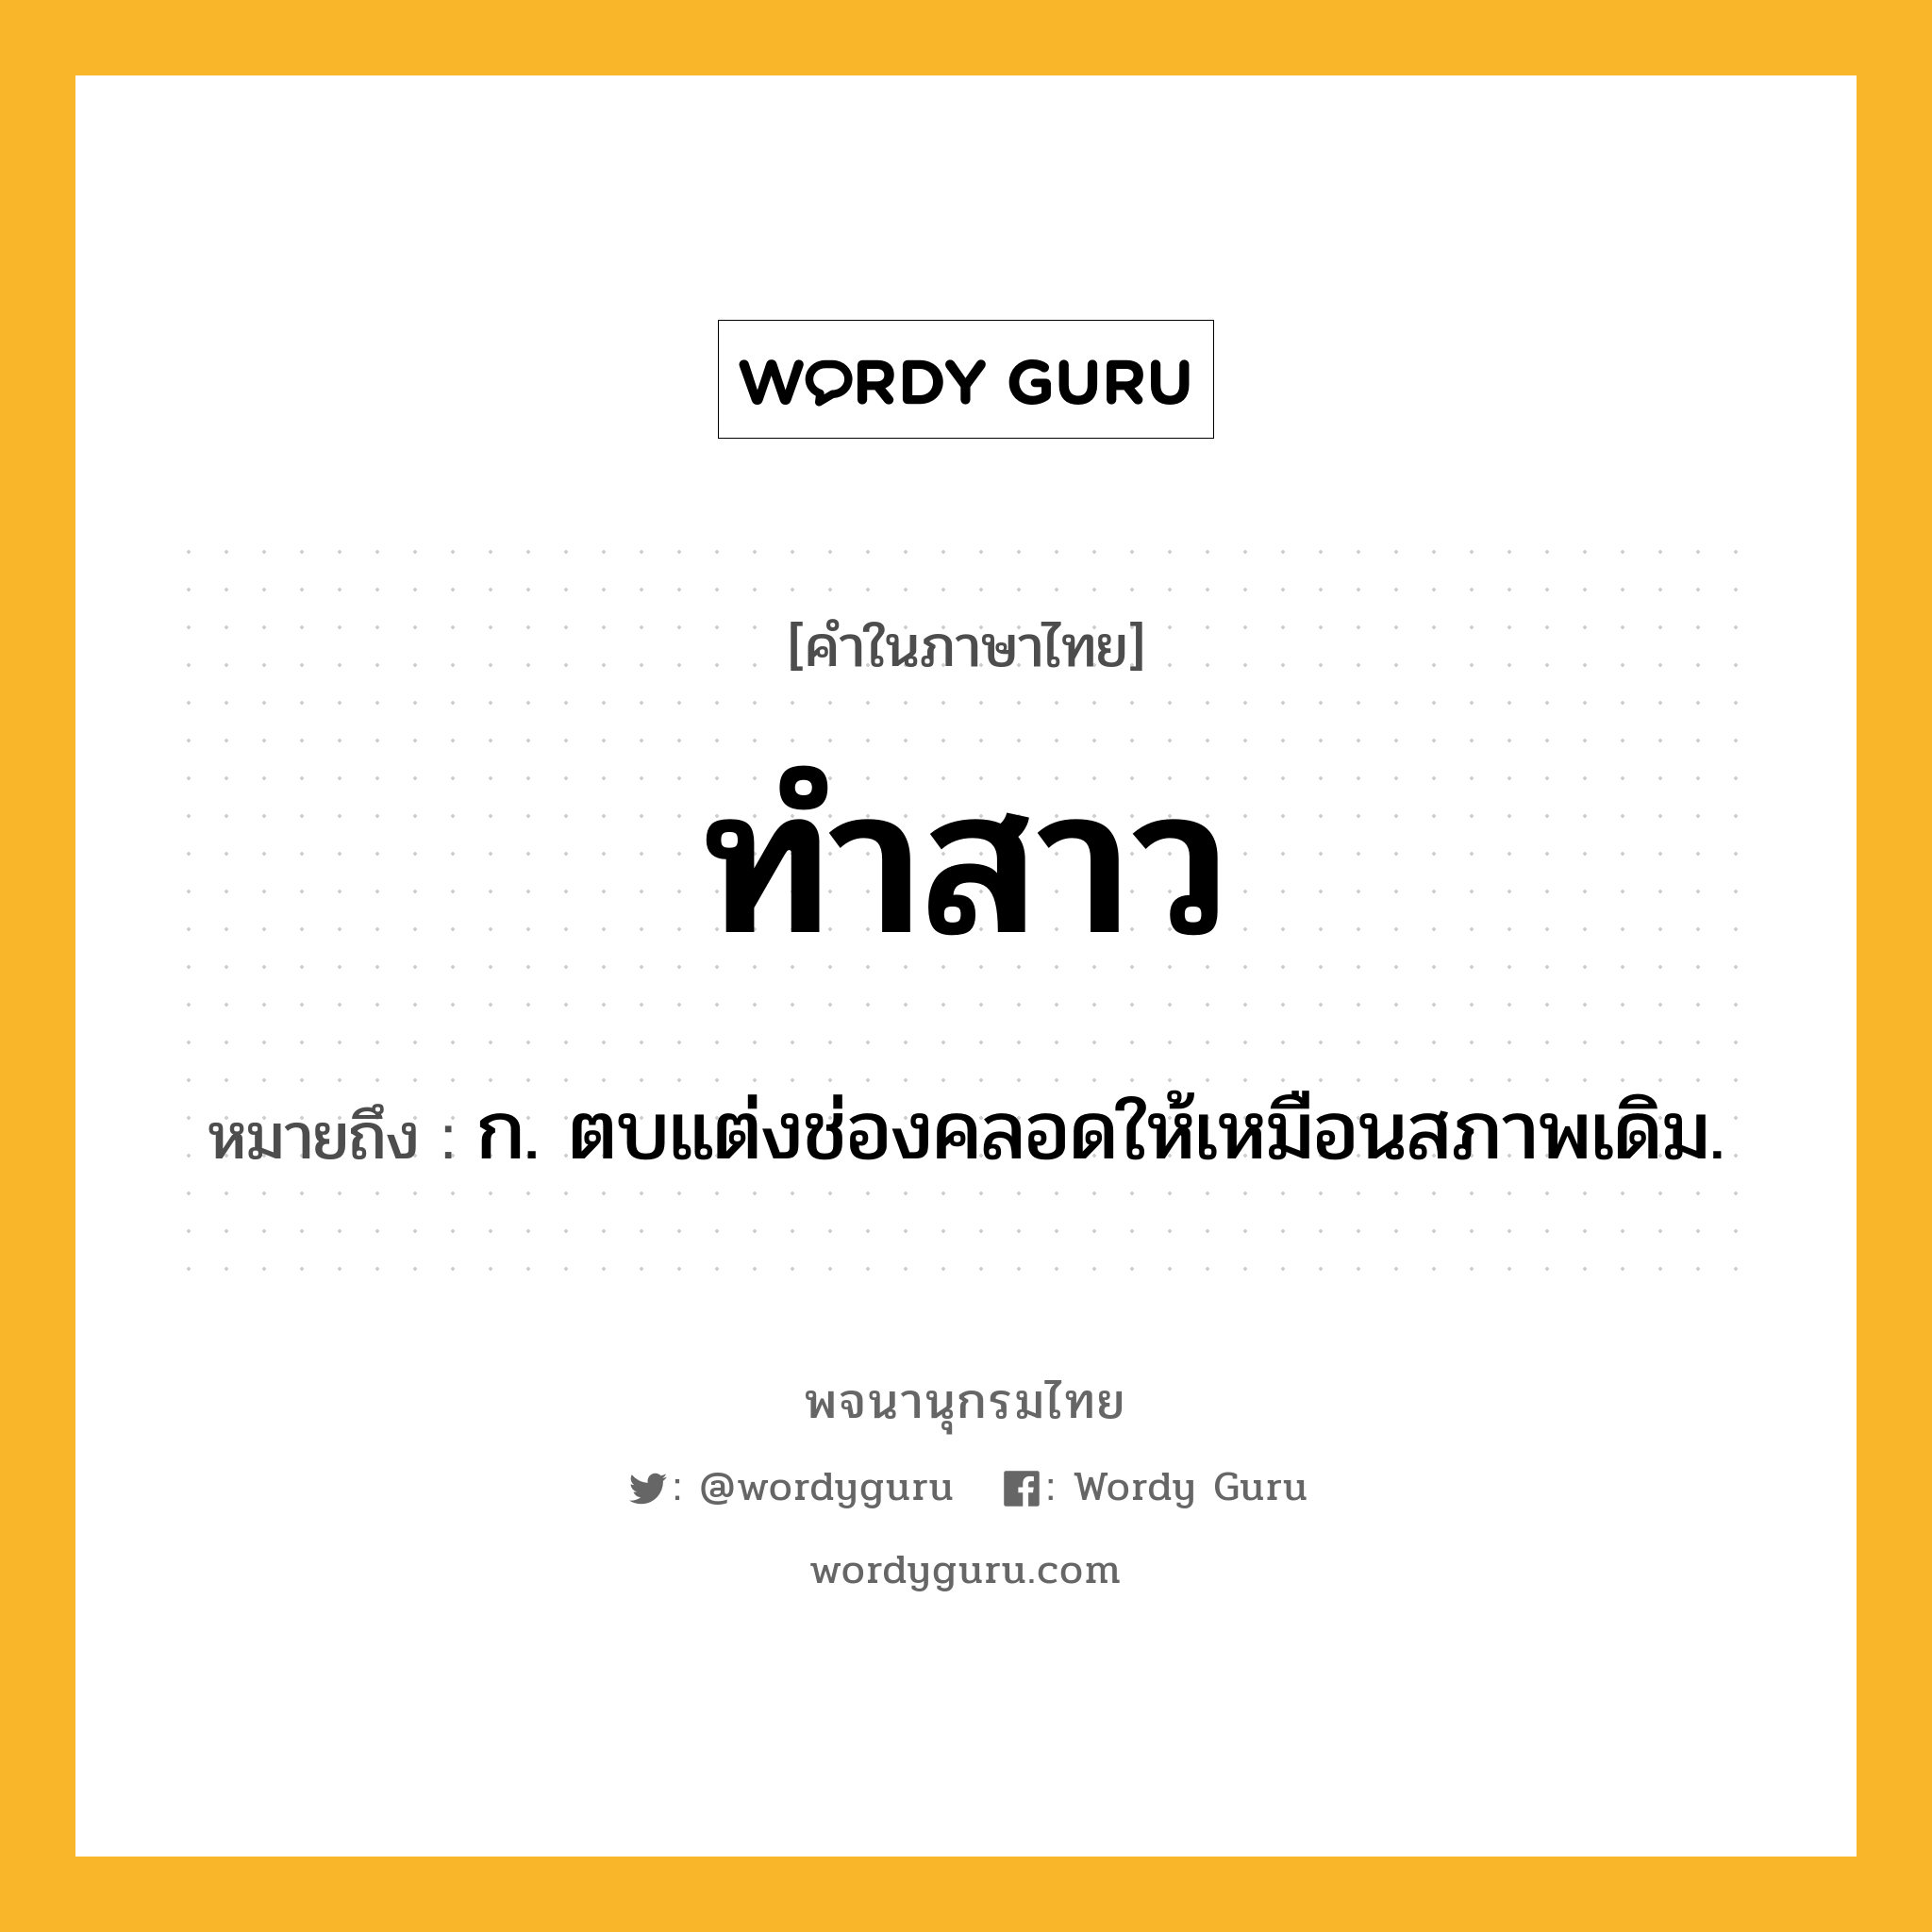 ทำสาว หมายถึงอะไร?, คำในภาษาไทย ทำสาว หมายถึง ก. ตบแต่งช่องคลอดให้เหมือนสภาพเดิม.